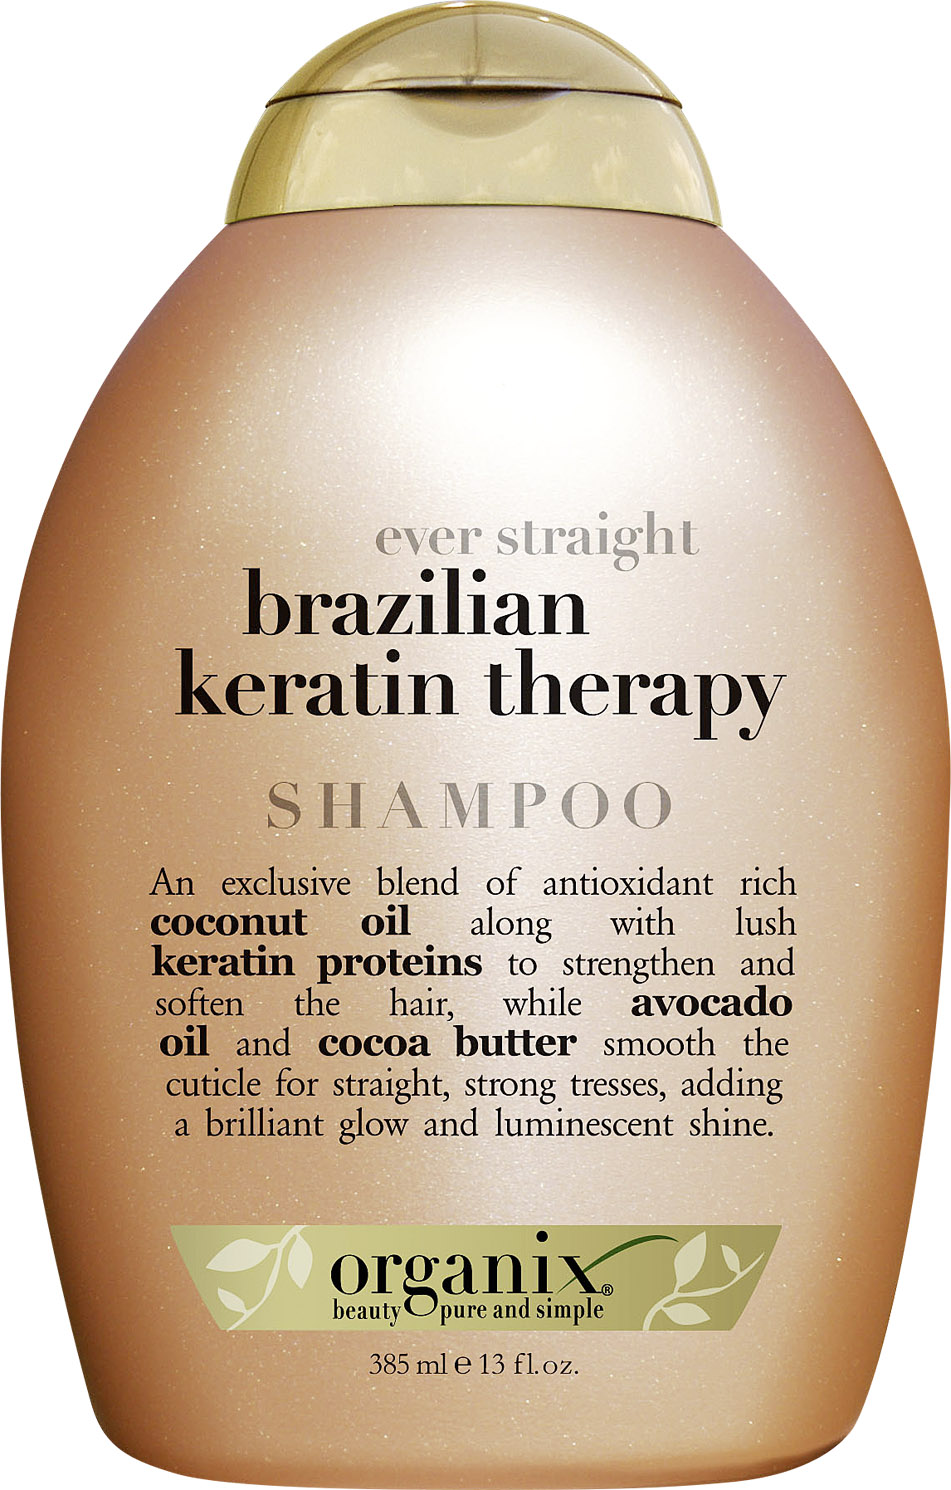 organix brazilian keratin smooth szampon wygładzający z brazylijsk